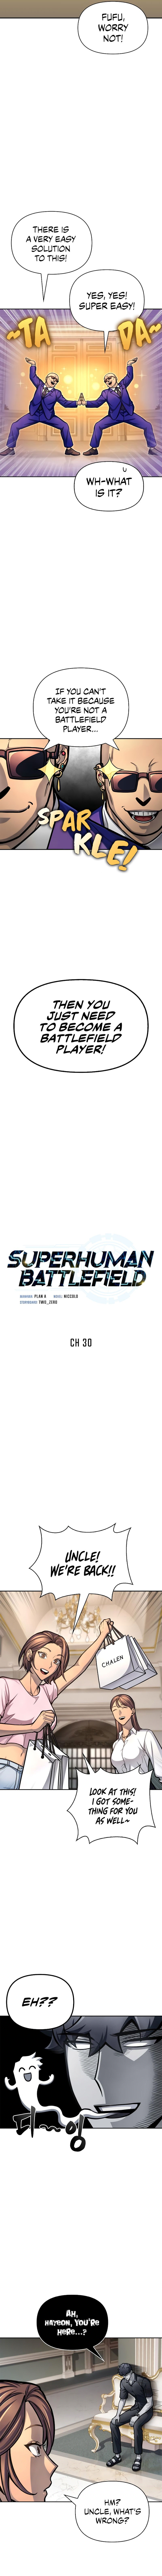 Superhuman Battlefield chapter 30